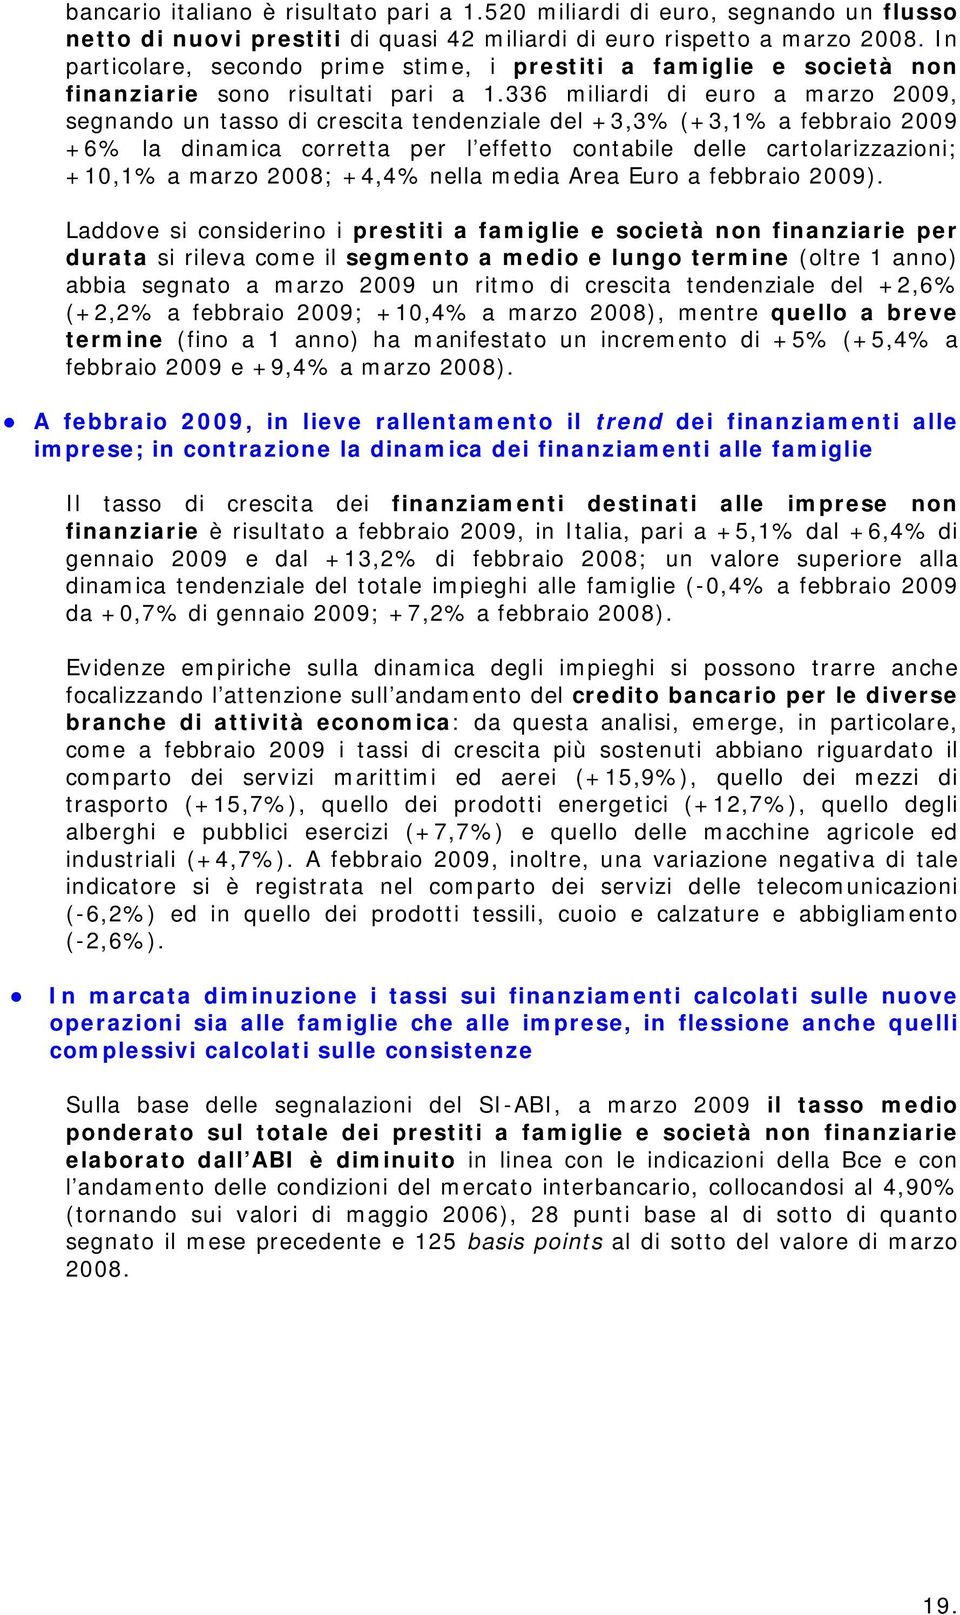 336 miliardi di euro a marzo 2009, segnando un tasso di crescita tendenziale del +3,3% (+3,1% a febbraio 2009 +6% la dinamica corretta per l effetto contabile delle cartolarizzazioni; +10,1% a marzo